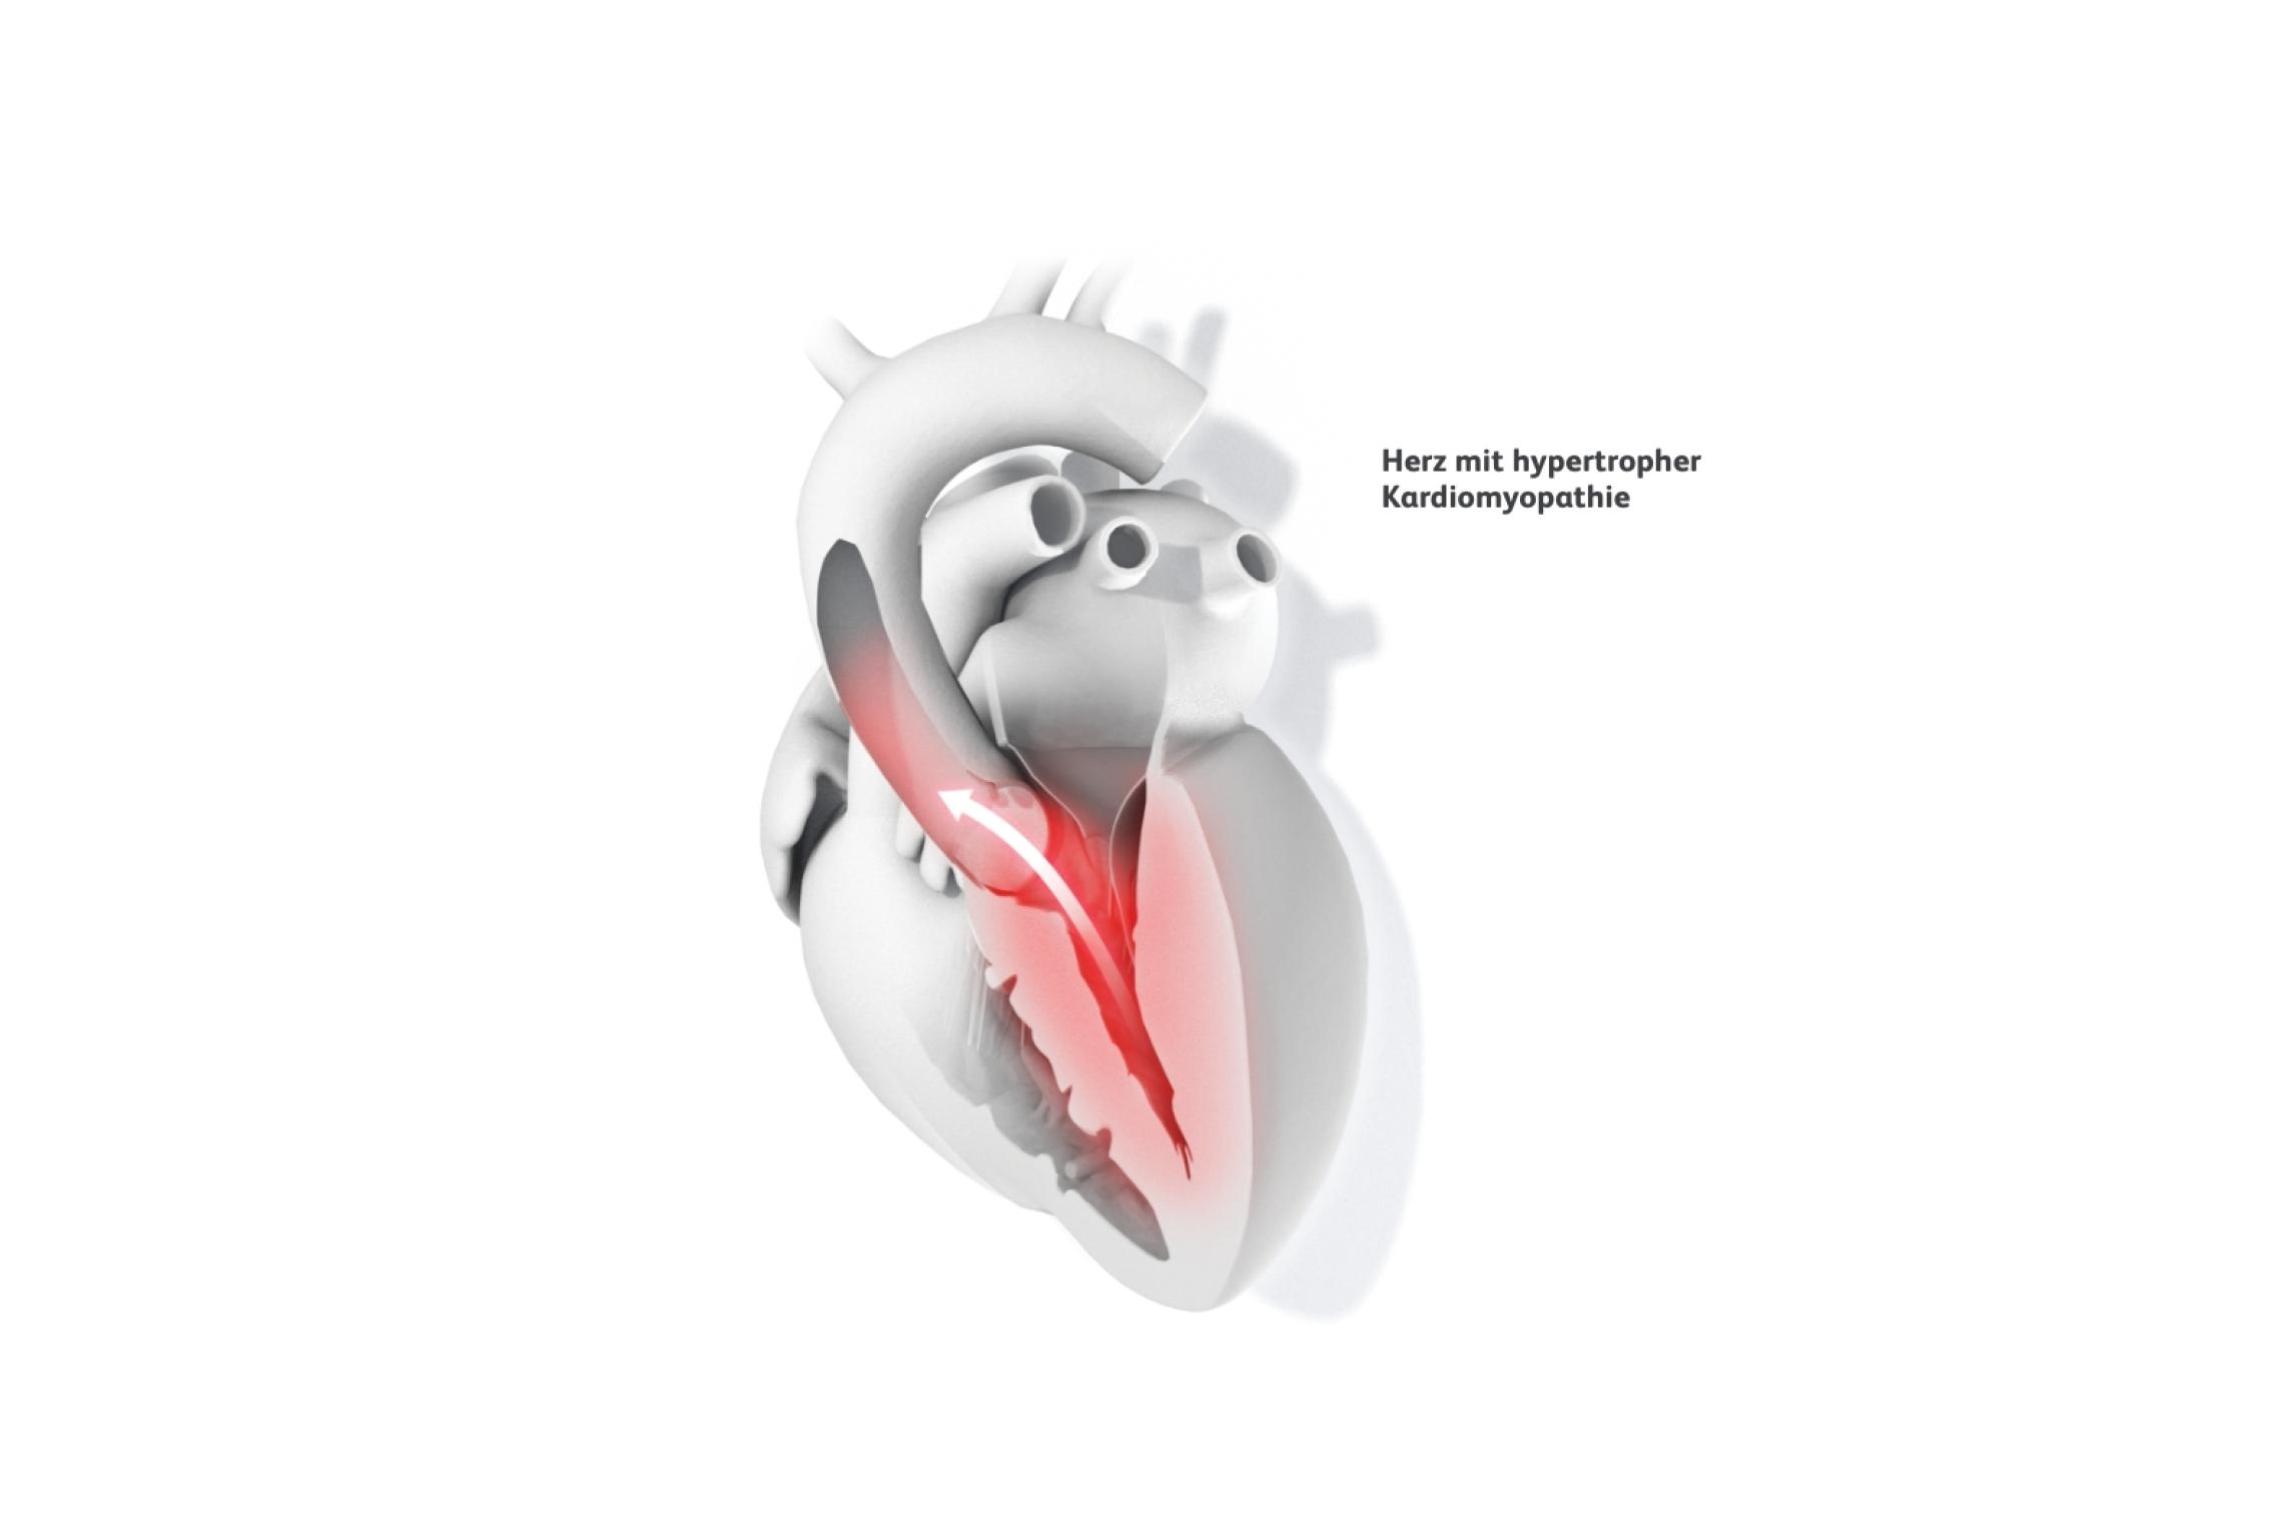 medizinische Illustration eines Herzens mit hypertropher Kardiomyopathie